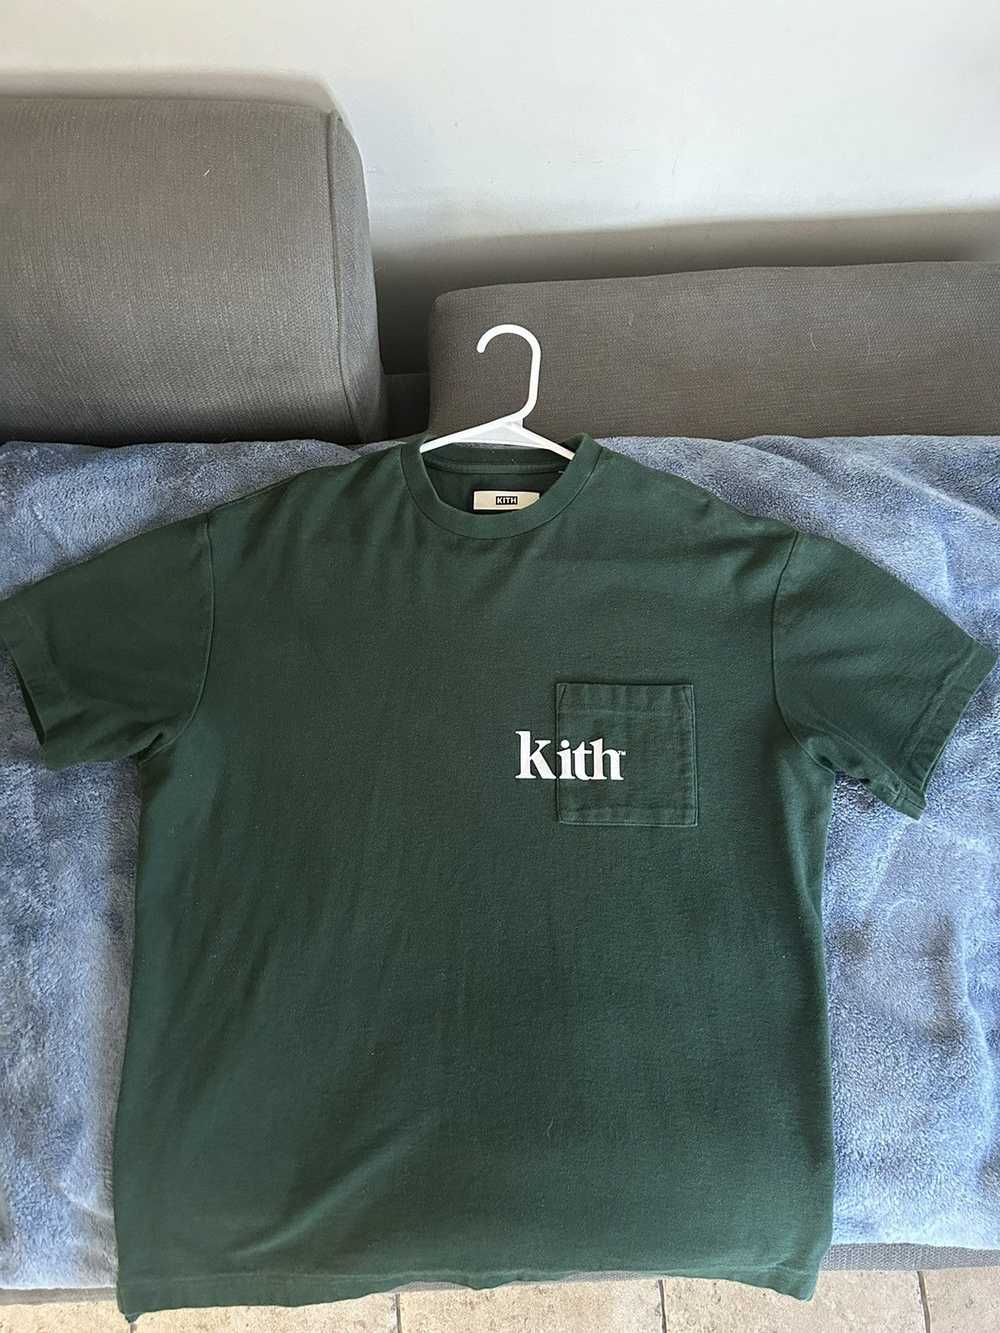 Kith Kith pocket tee - image 1